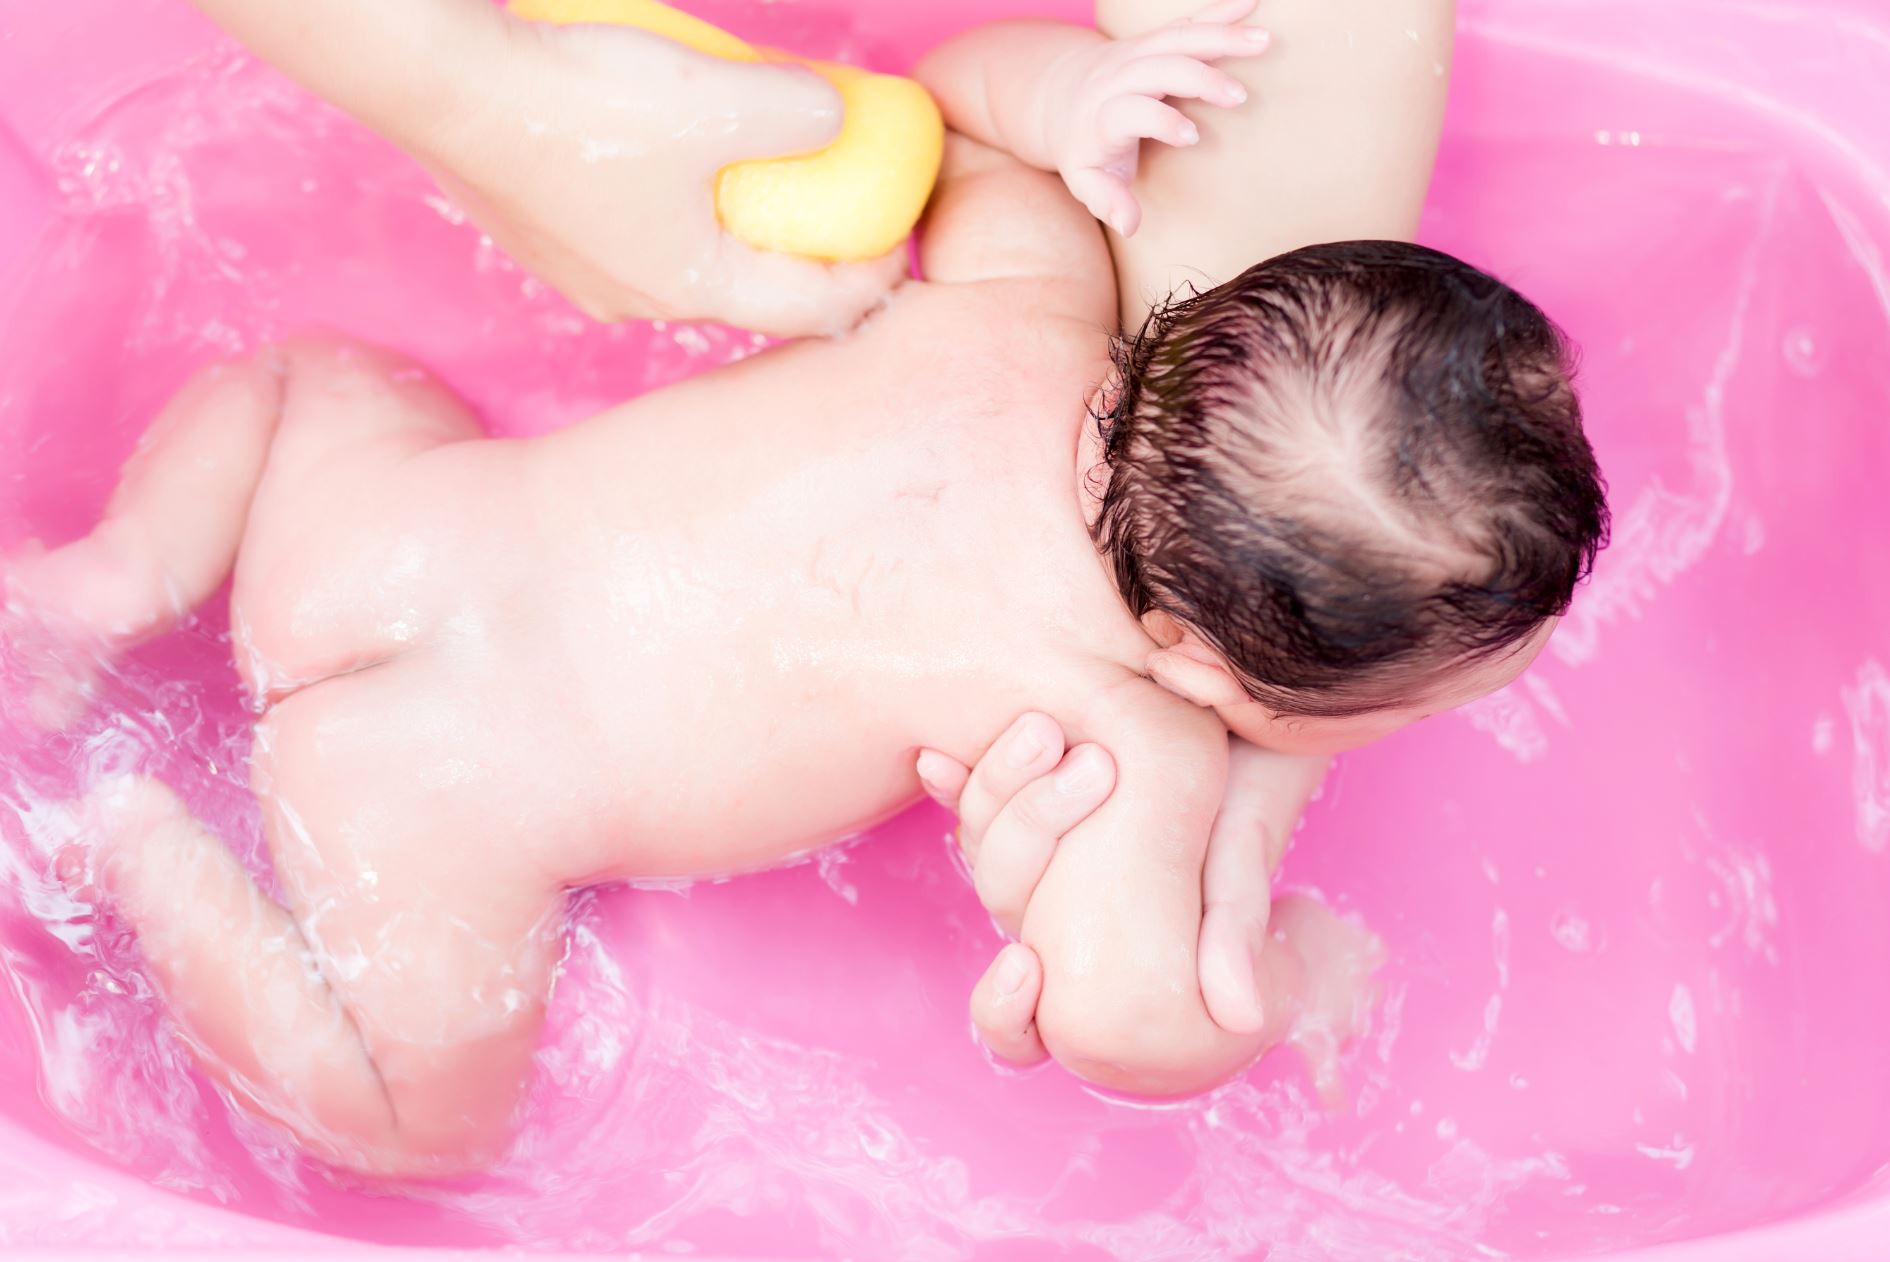 Купание новорожденного форум. Купание младенца. Совместное купание. Купание грудничка в ванной 3 месяца. Мыло для купания новорожденного.